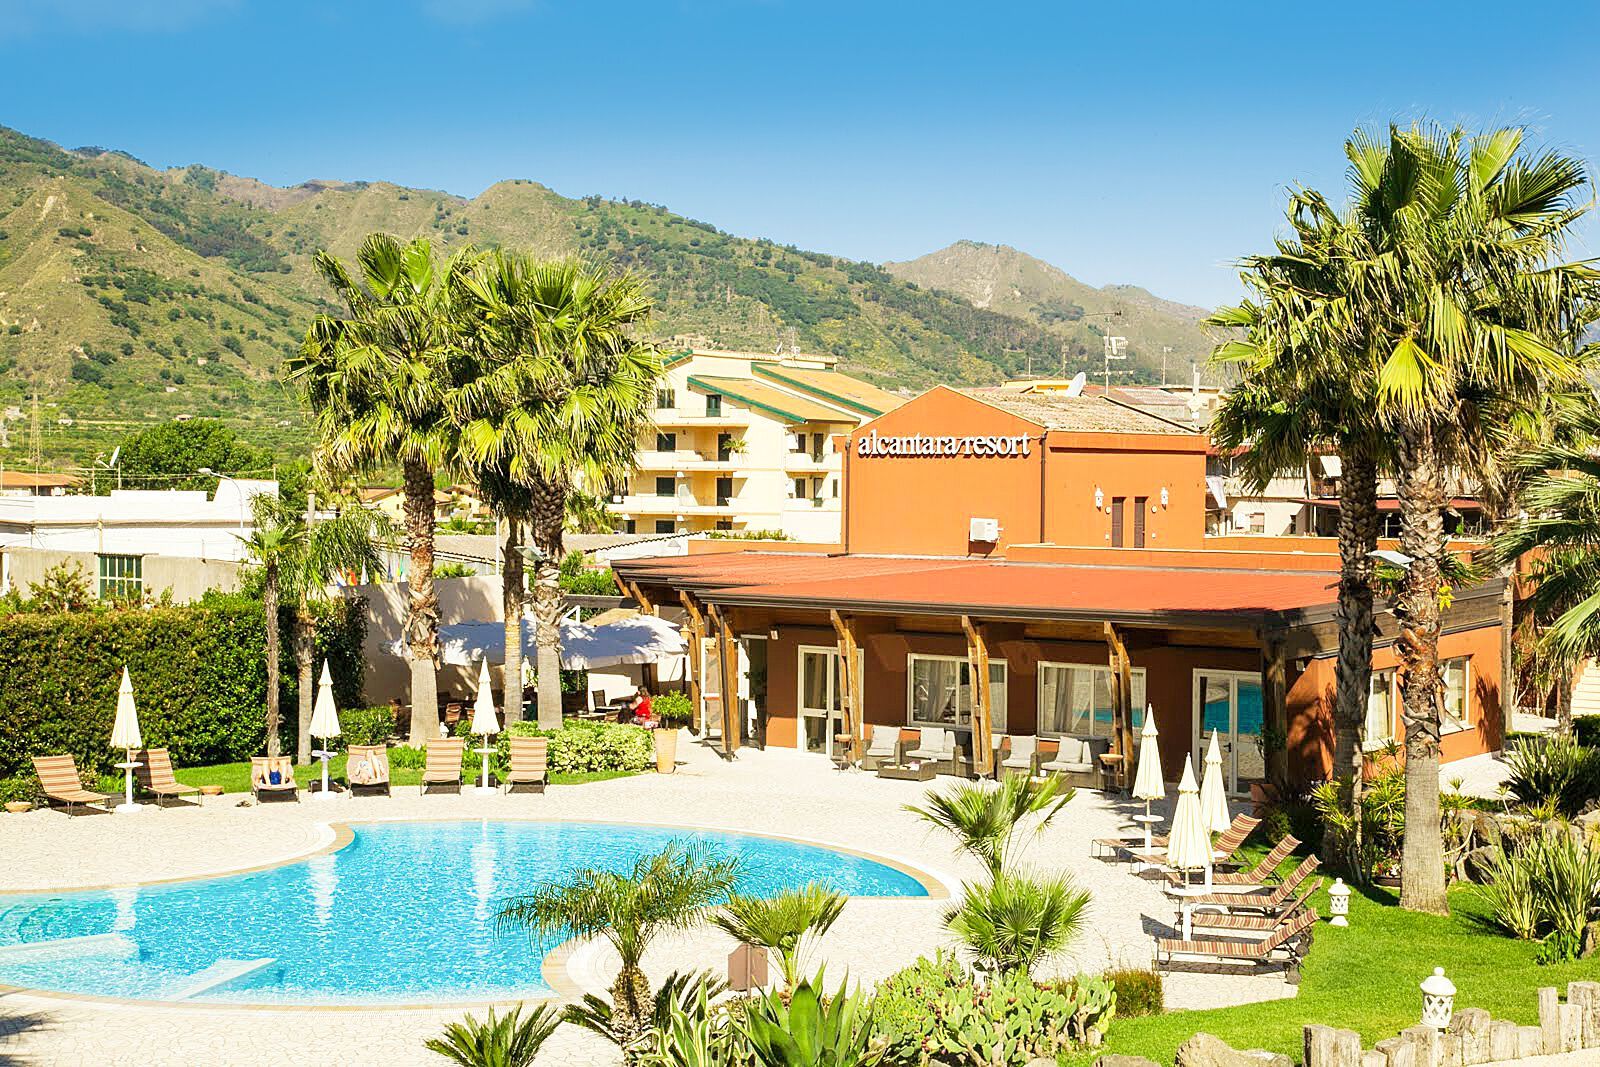 Italie - Sicile - Hôtel Alcantara Resort 4*